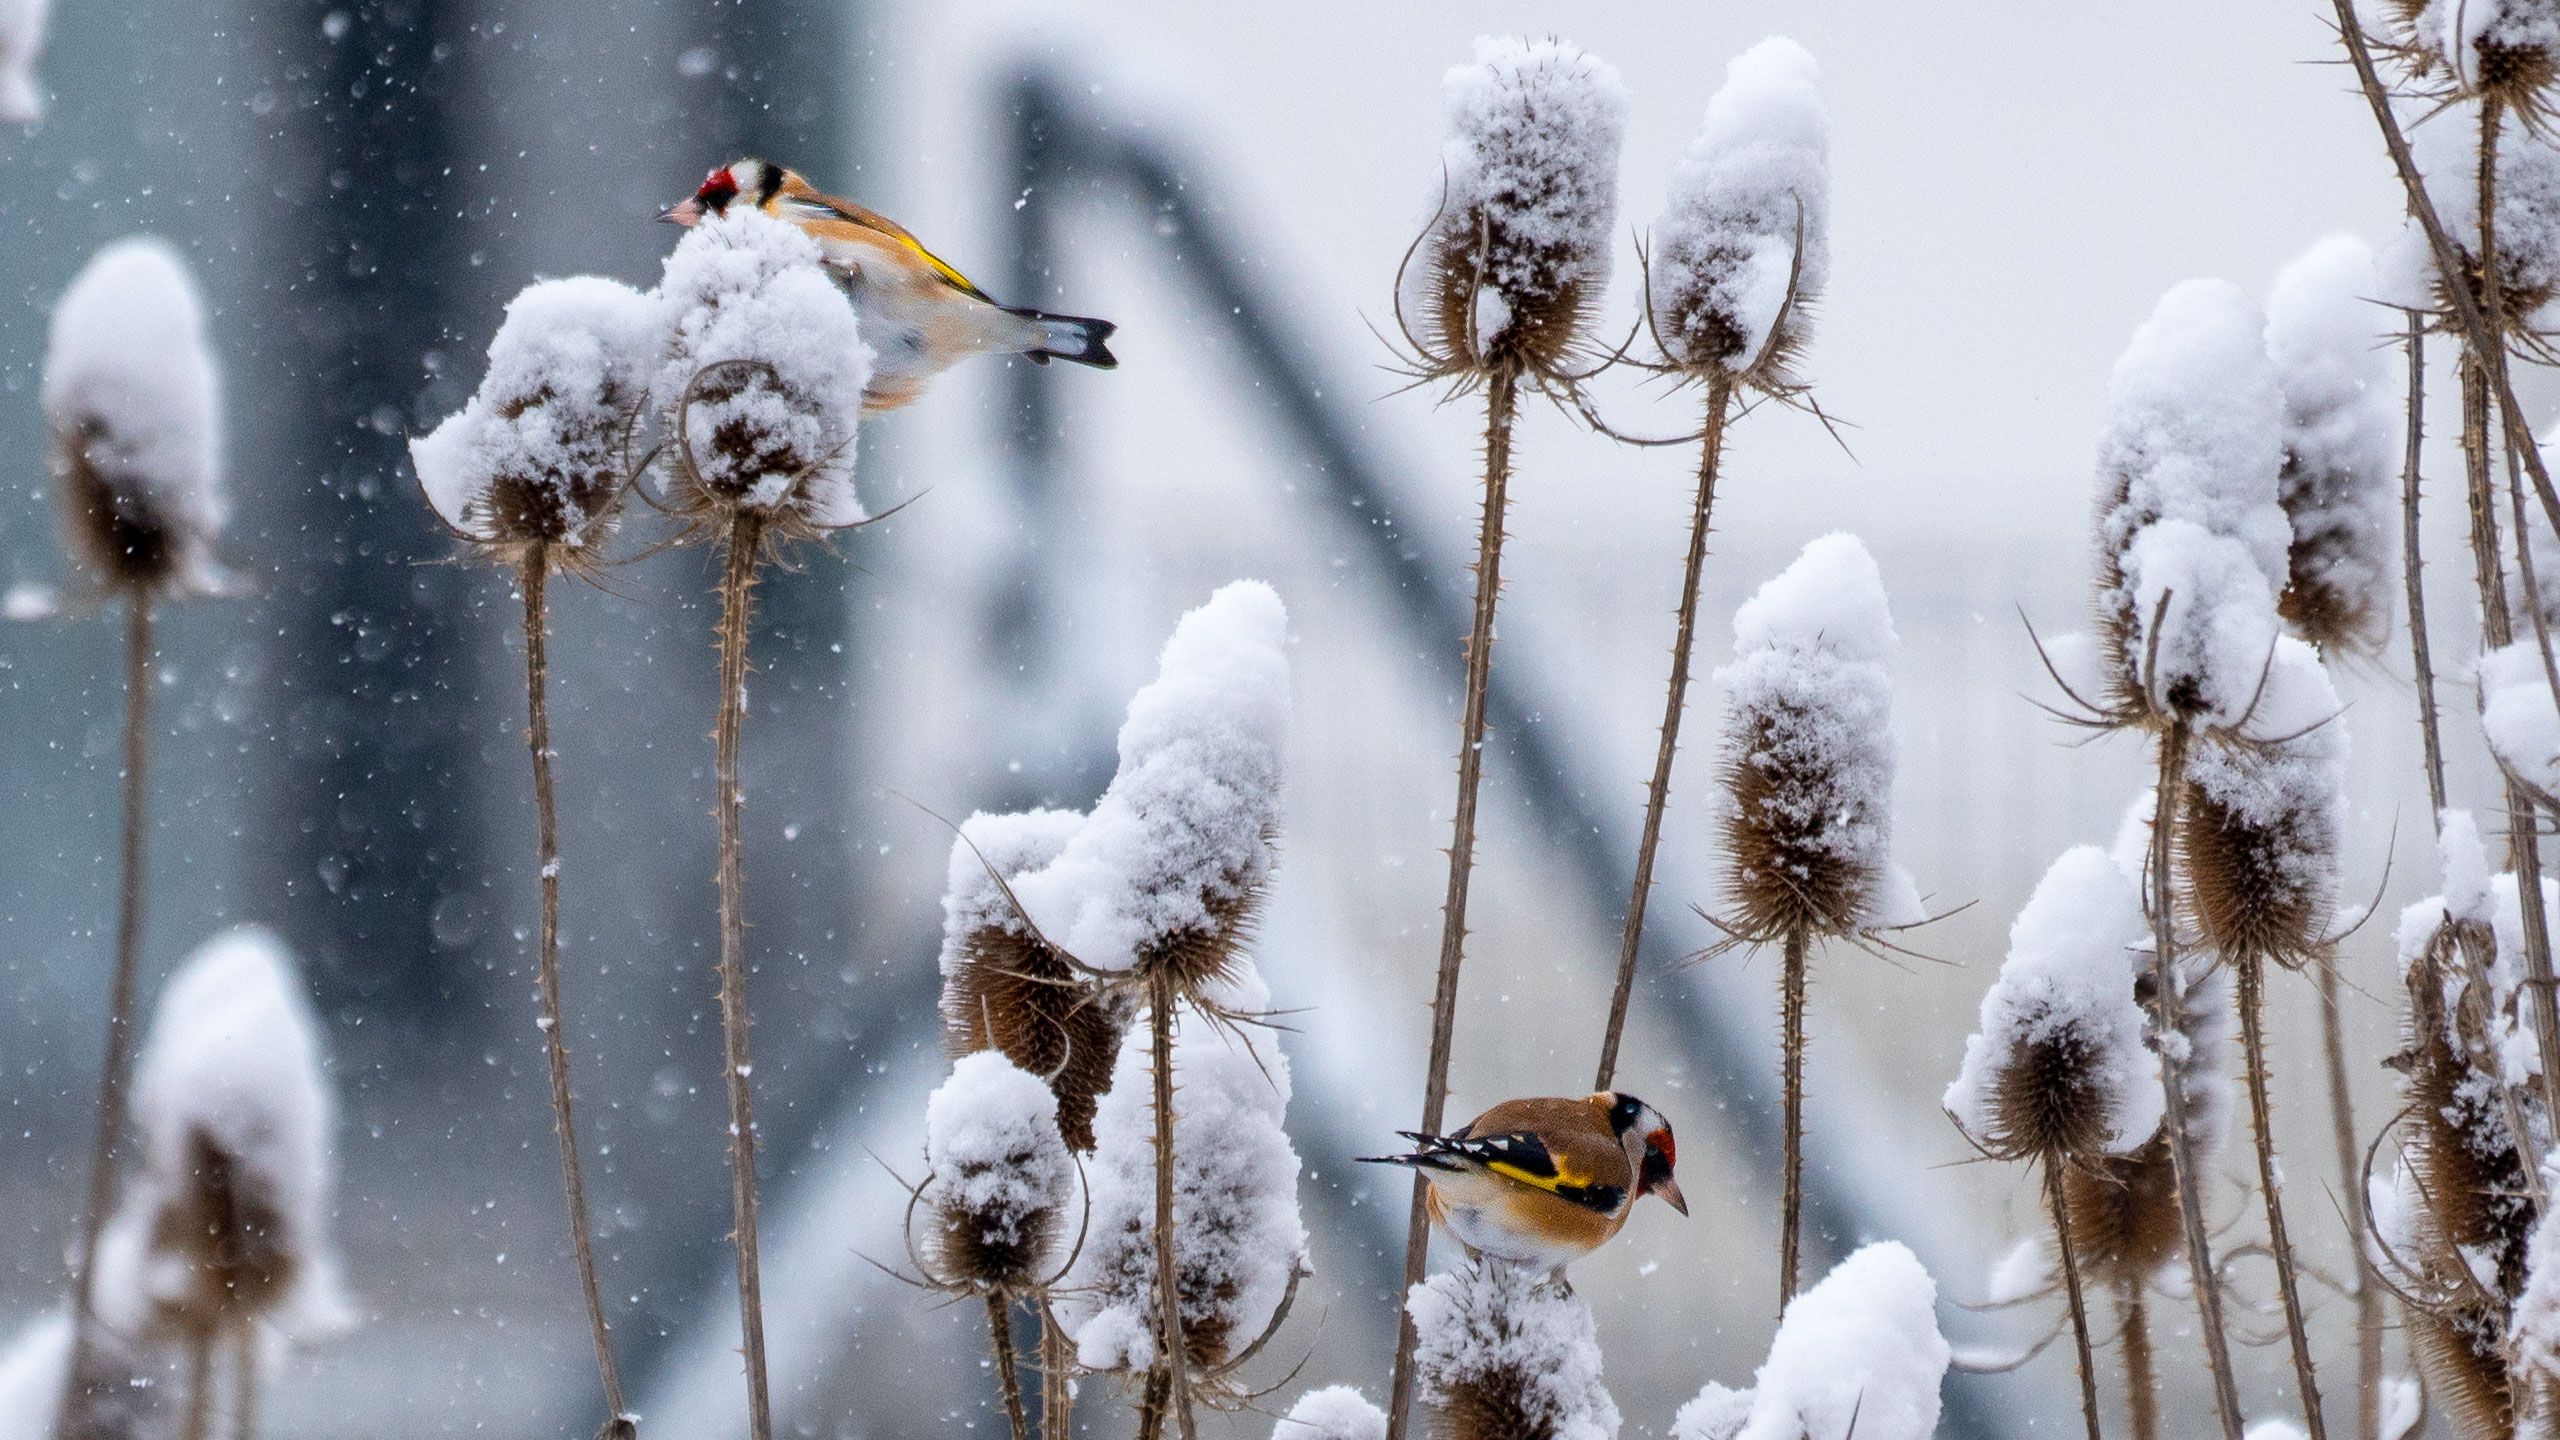 Stieglitzen dienen die stacheligen Blütenständen im Winter als Futterquelle